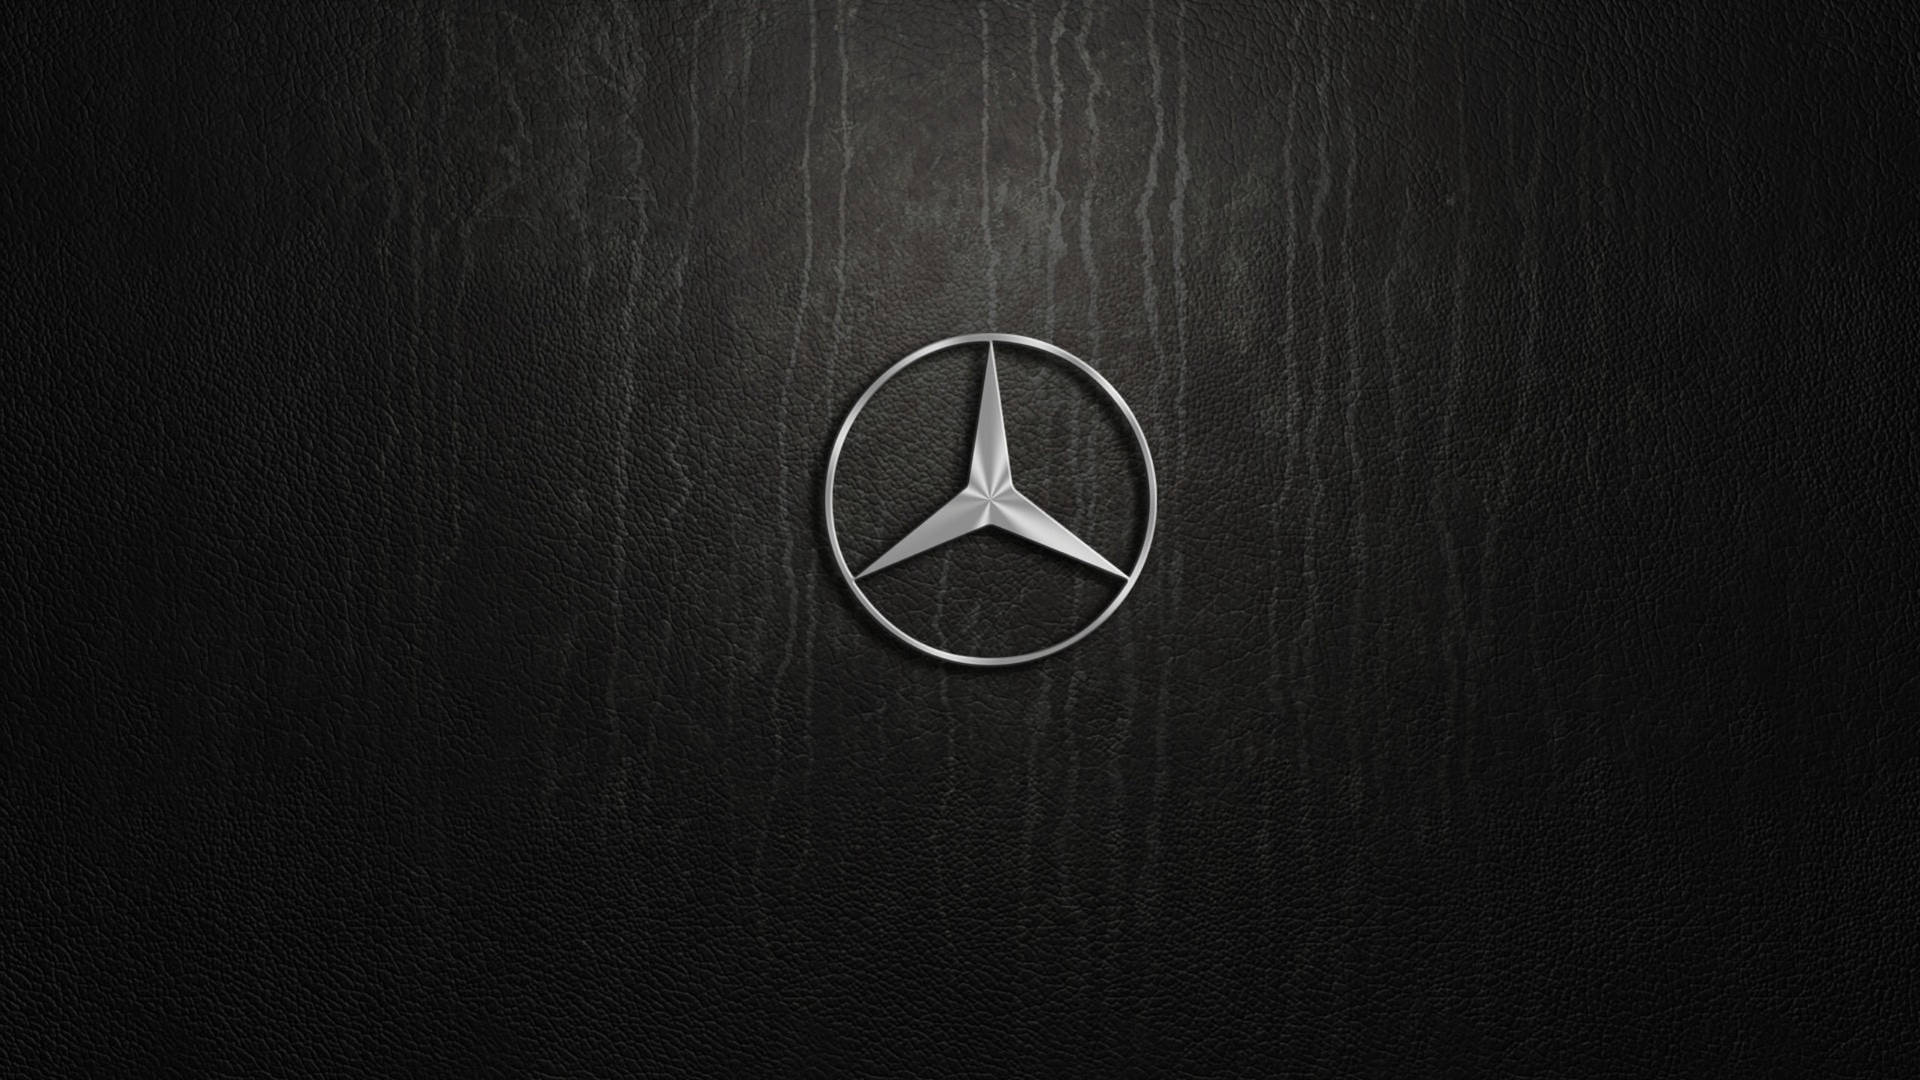 Silver Mercedes Benz-emblem Wallpaper